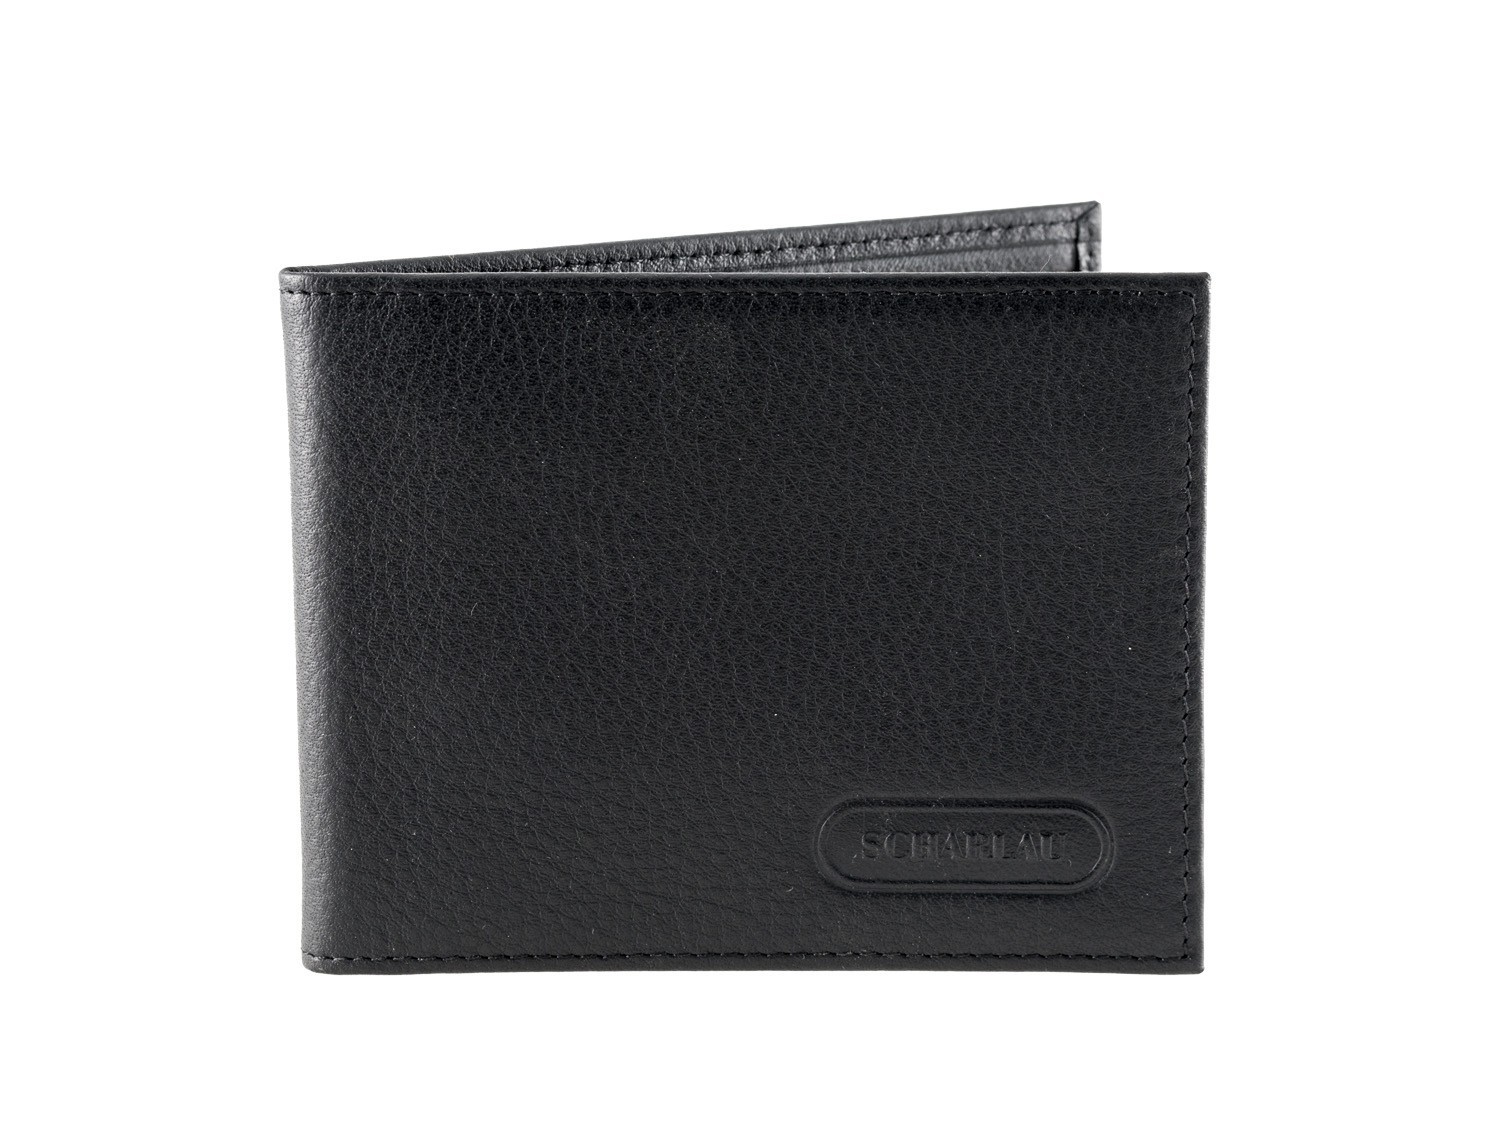 Leather credit card holder for men front